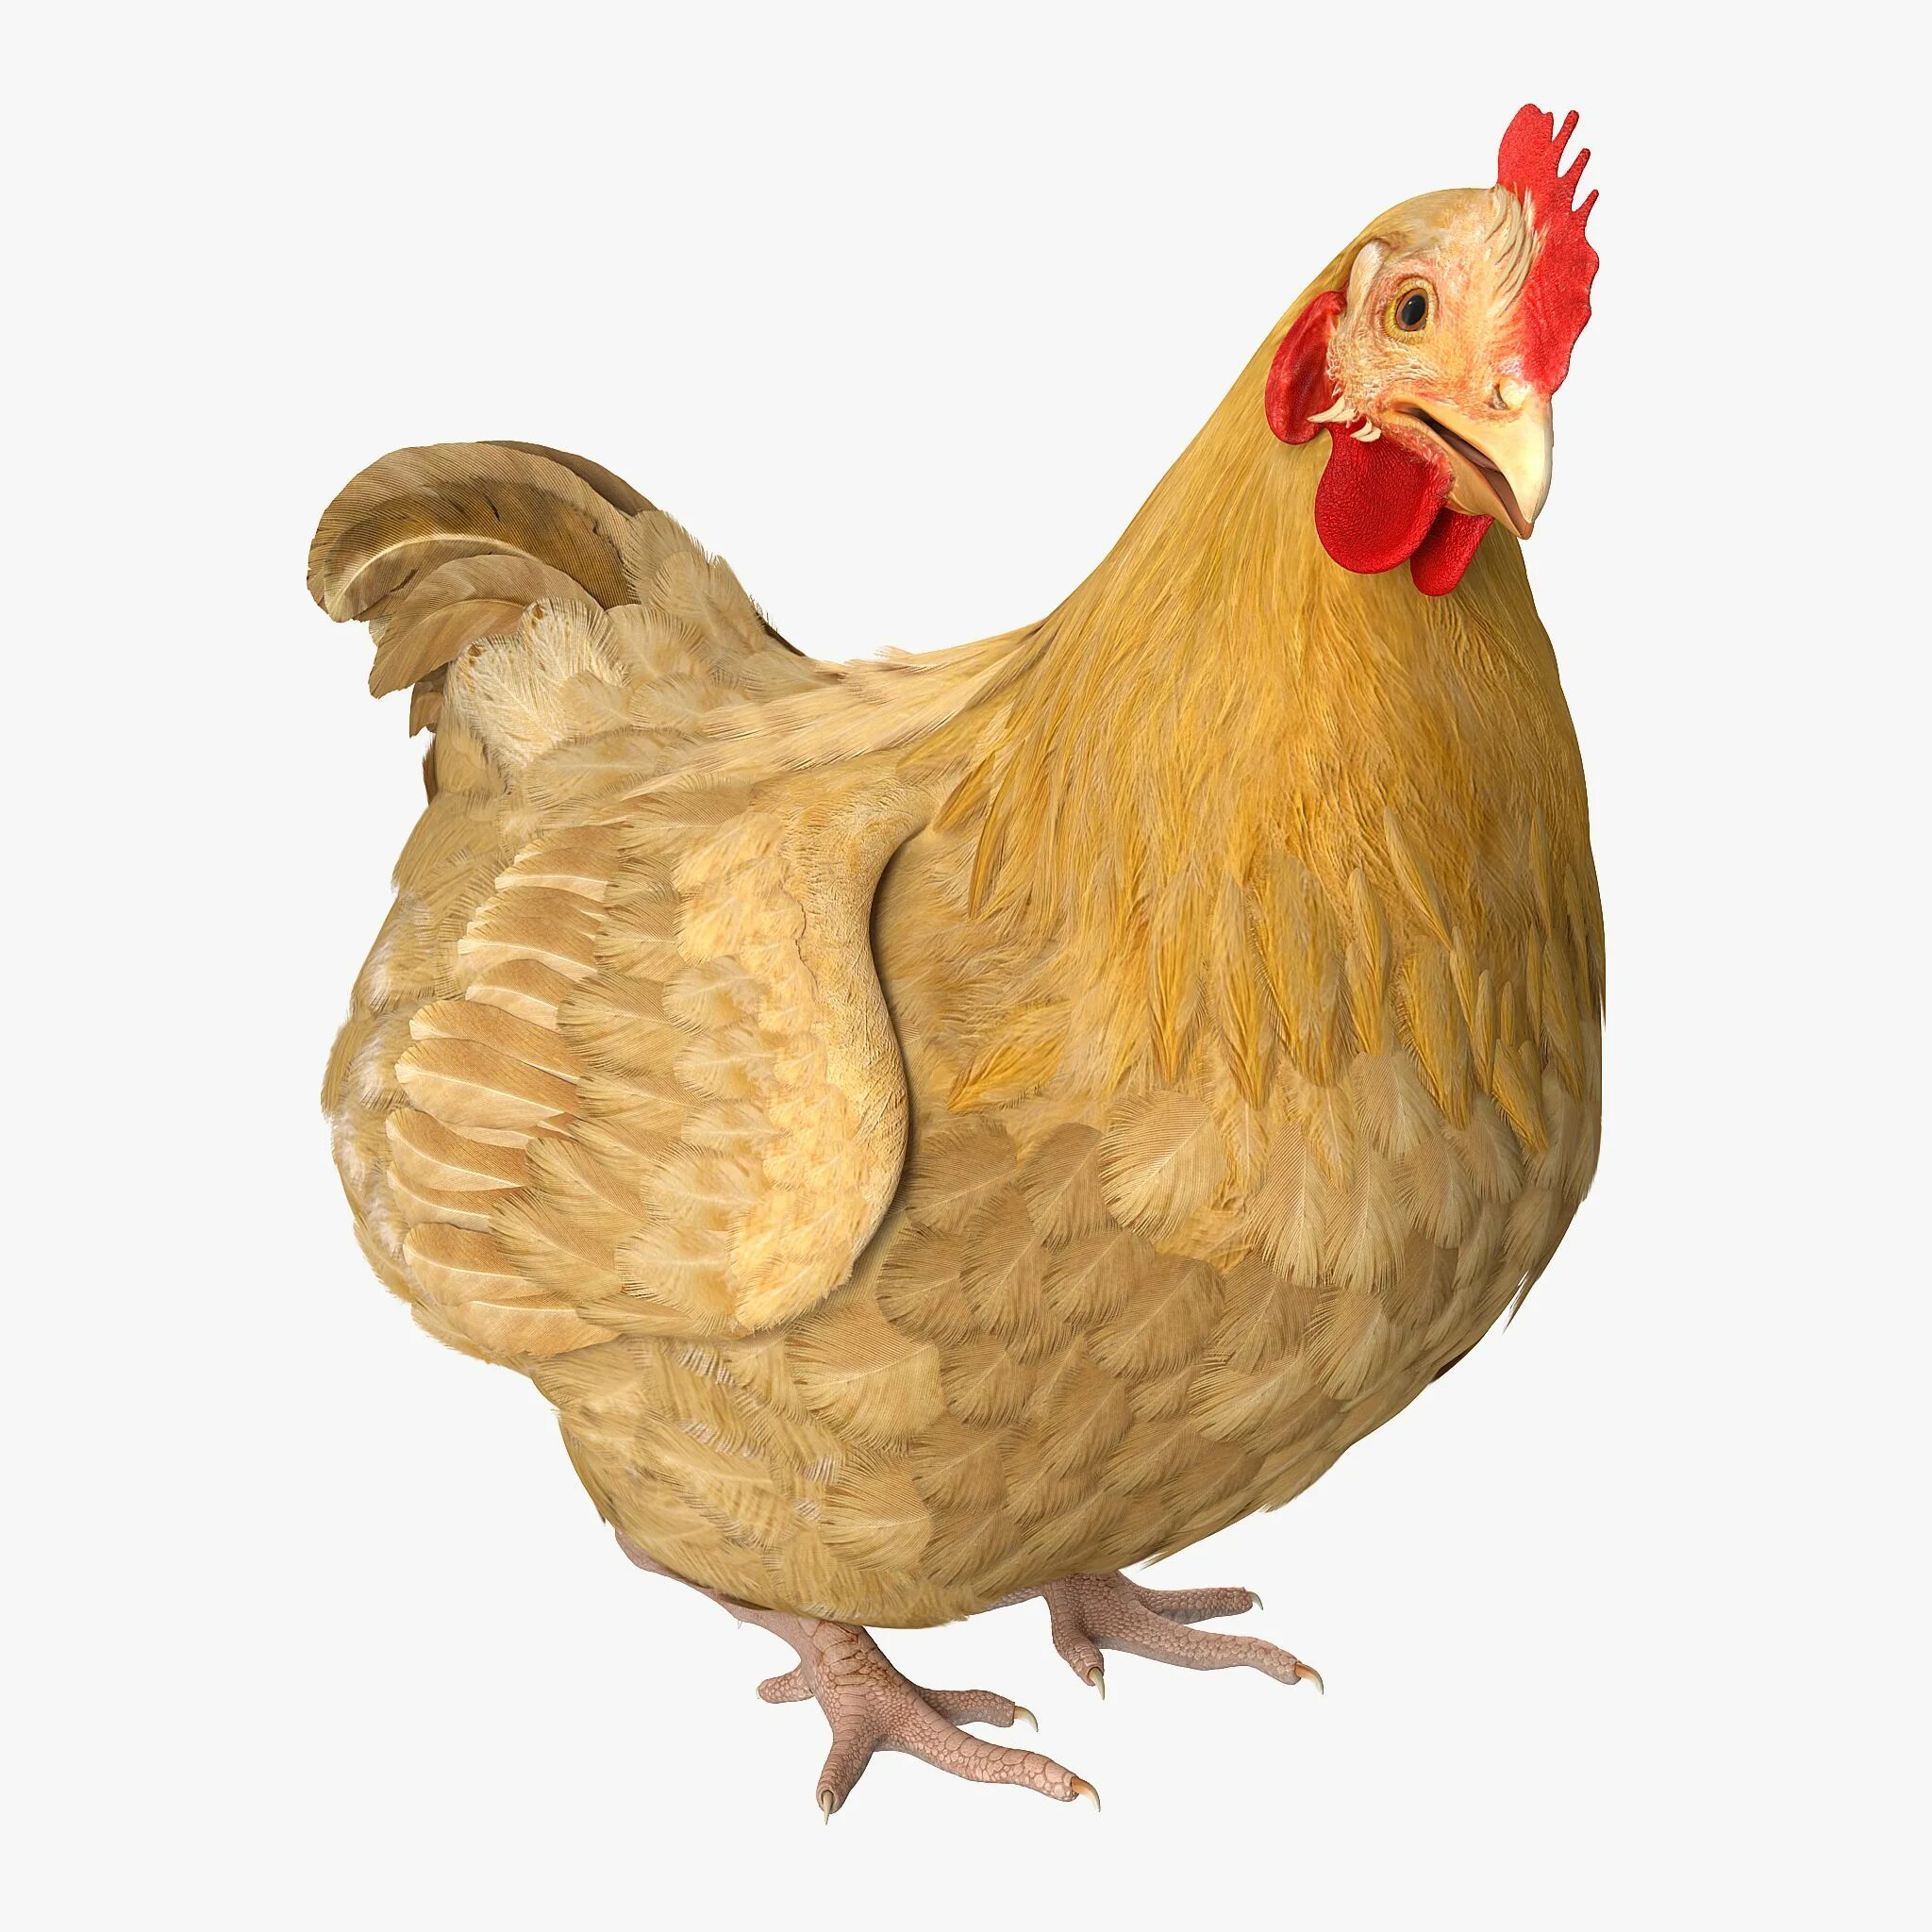 Chicken 3.8 01. Курица 3д модель. Курочка 3 д модель. 3d модель курицы.